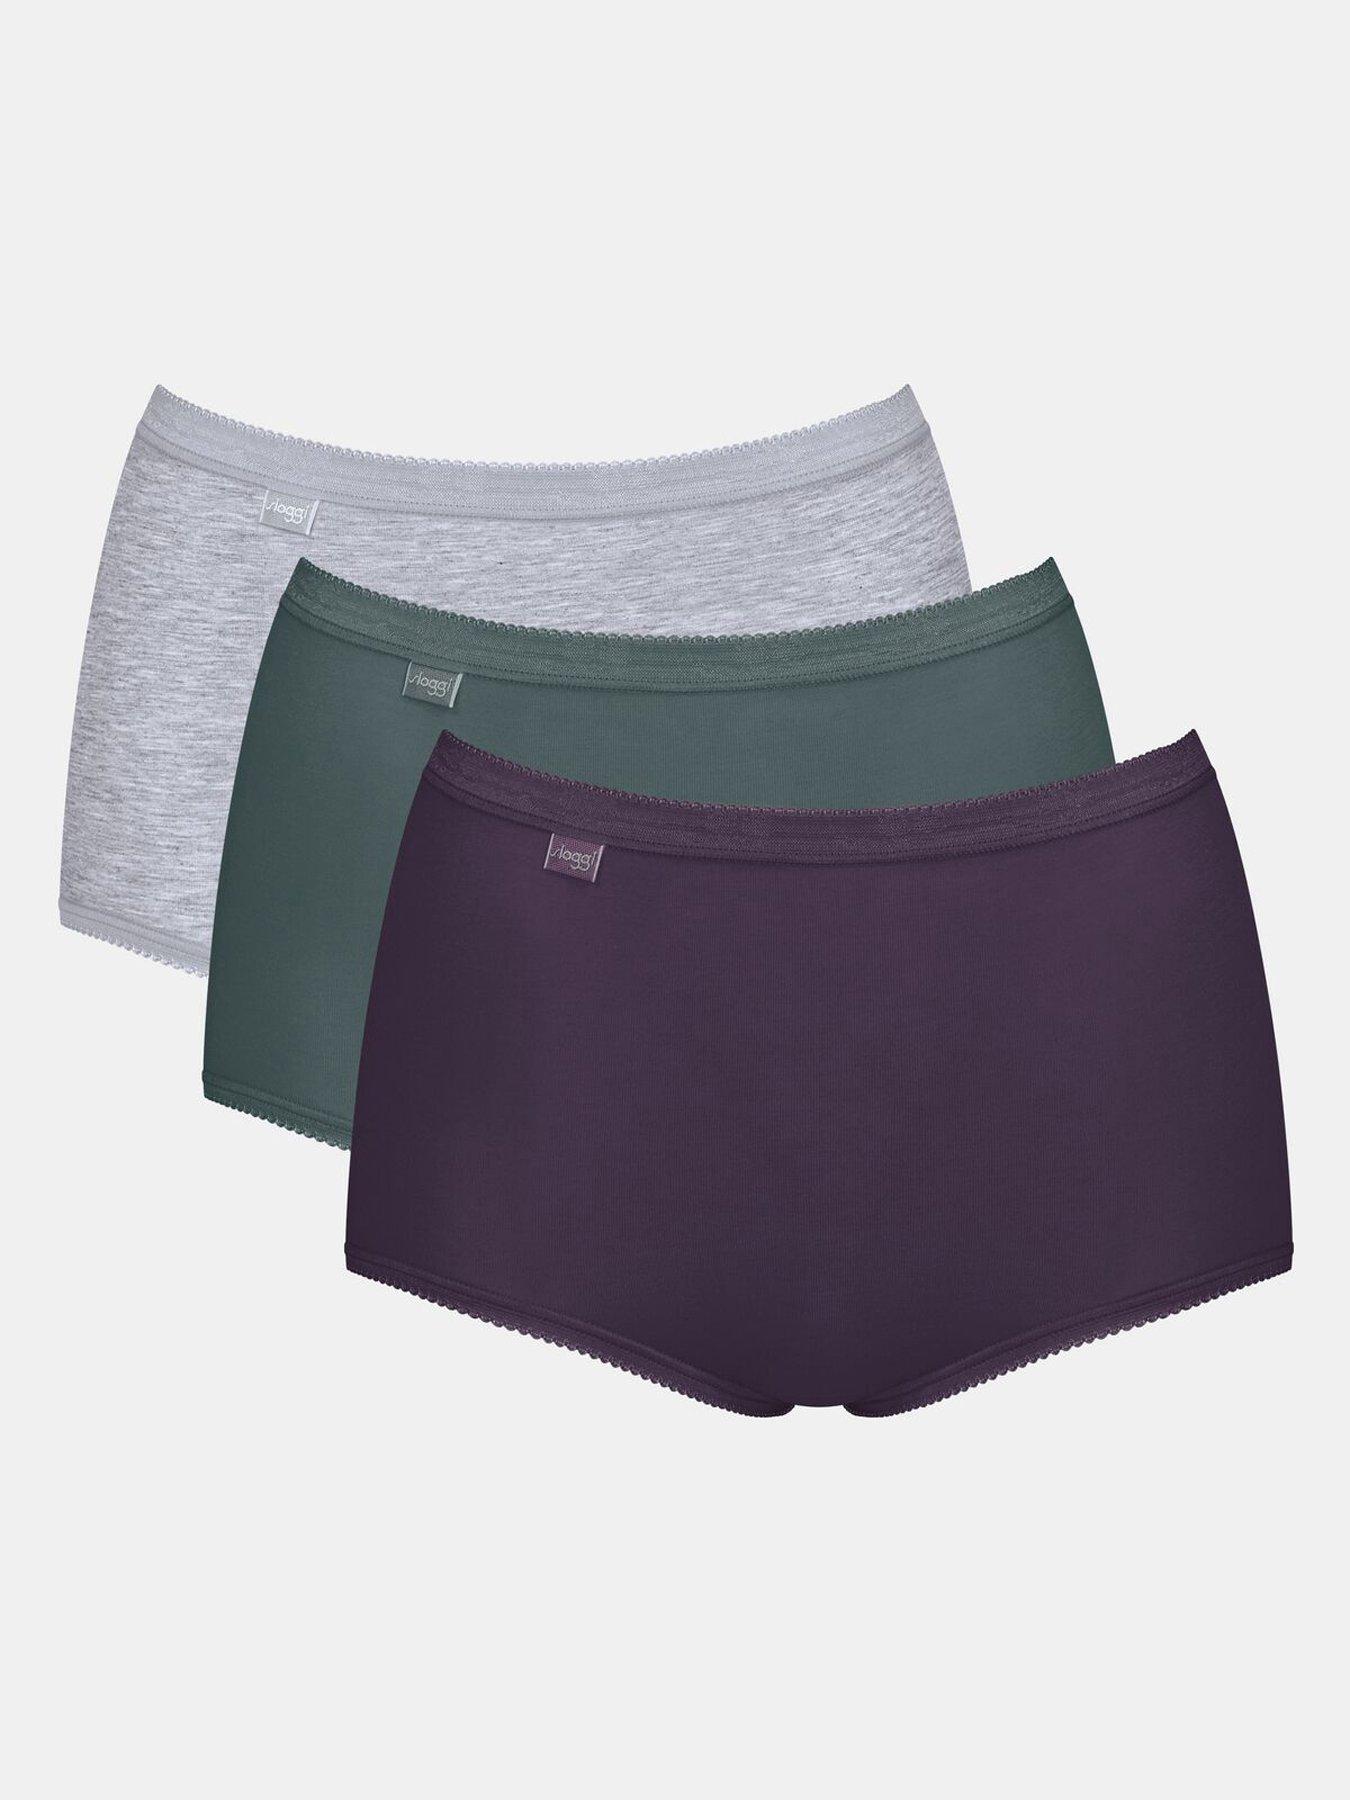 Sloggi Basic+ Knickers Midi Brief 95% Cotton Lightweight Underwear